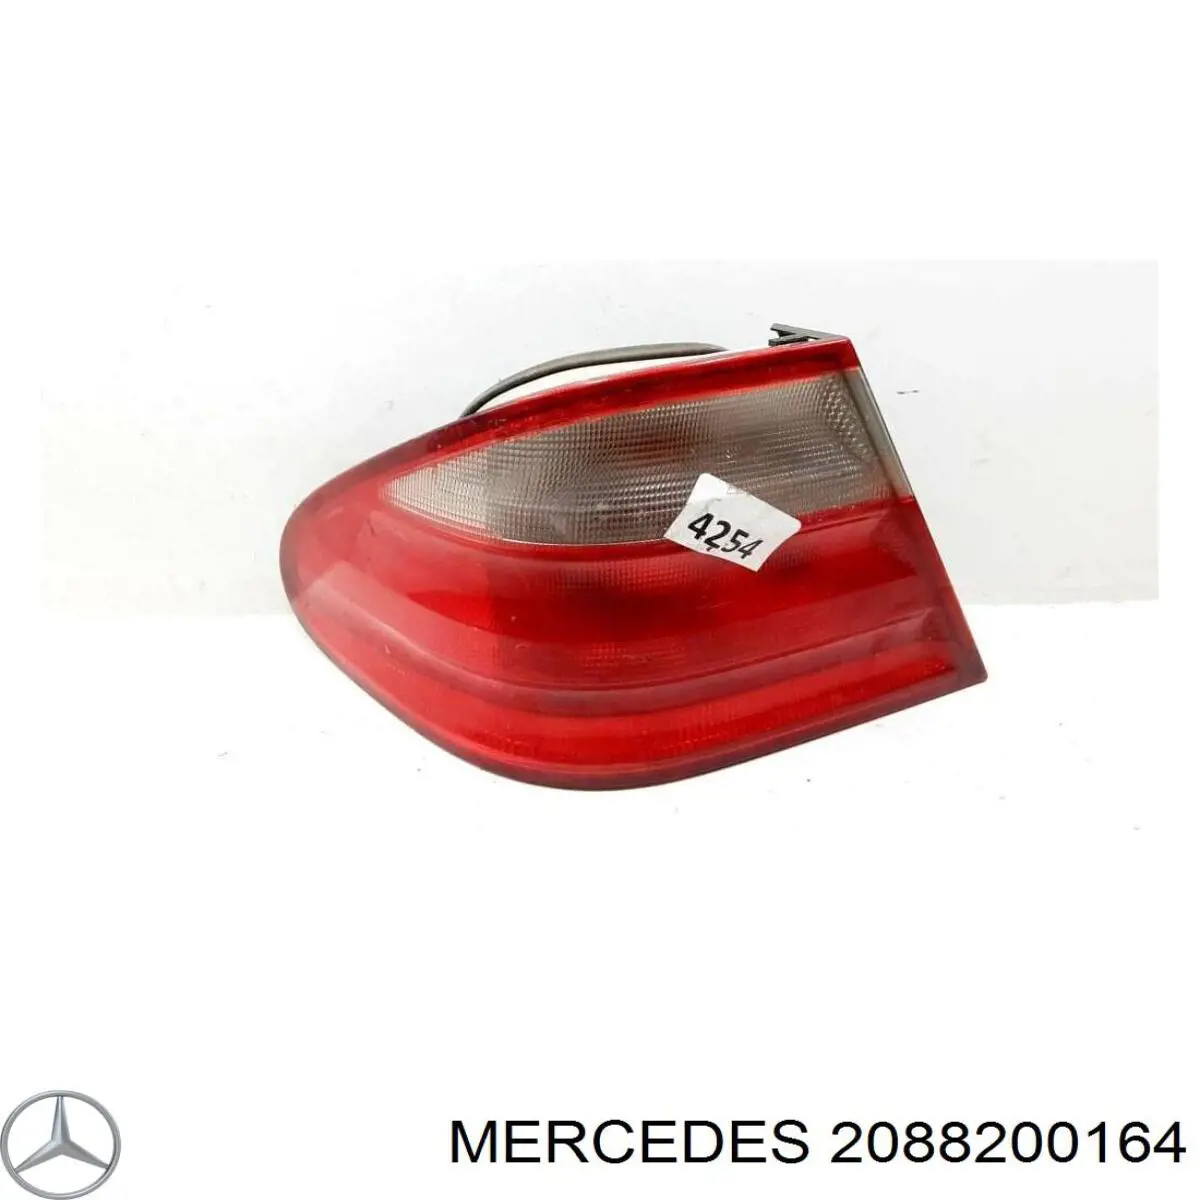 2088200164 Mercedes piloto trasero exterior izquierdo